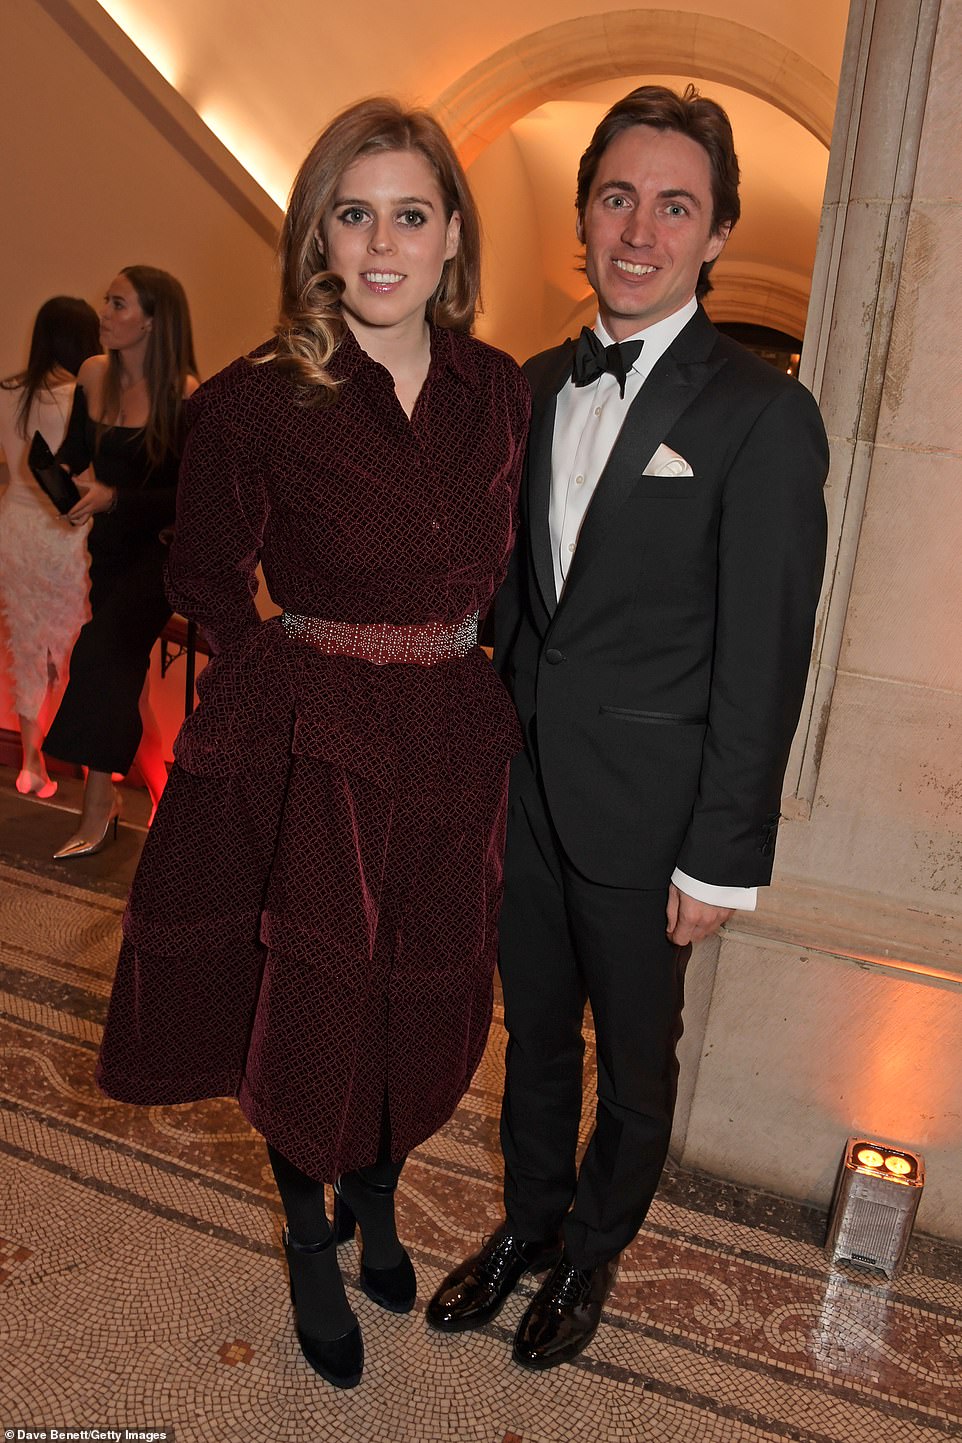 الأميرة بياتريس مع خطيبها الإيطالي إدواردو مابيلي موززي في لندن